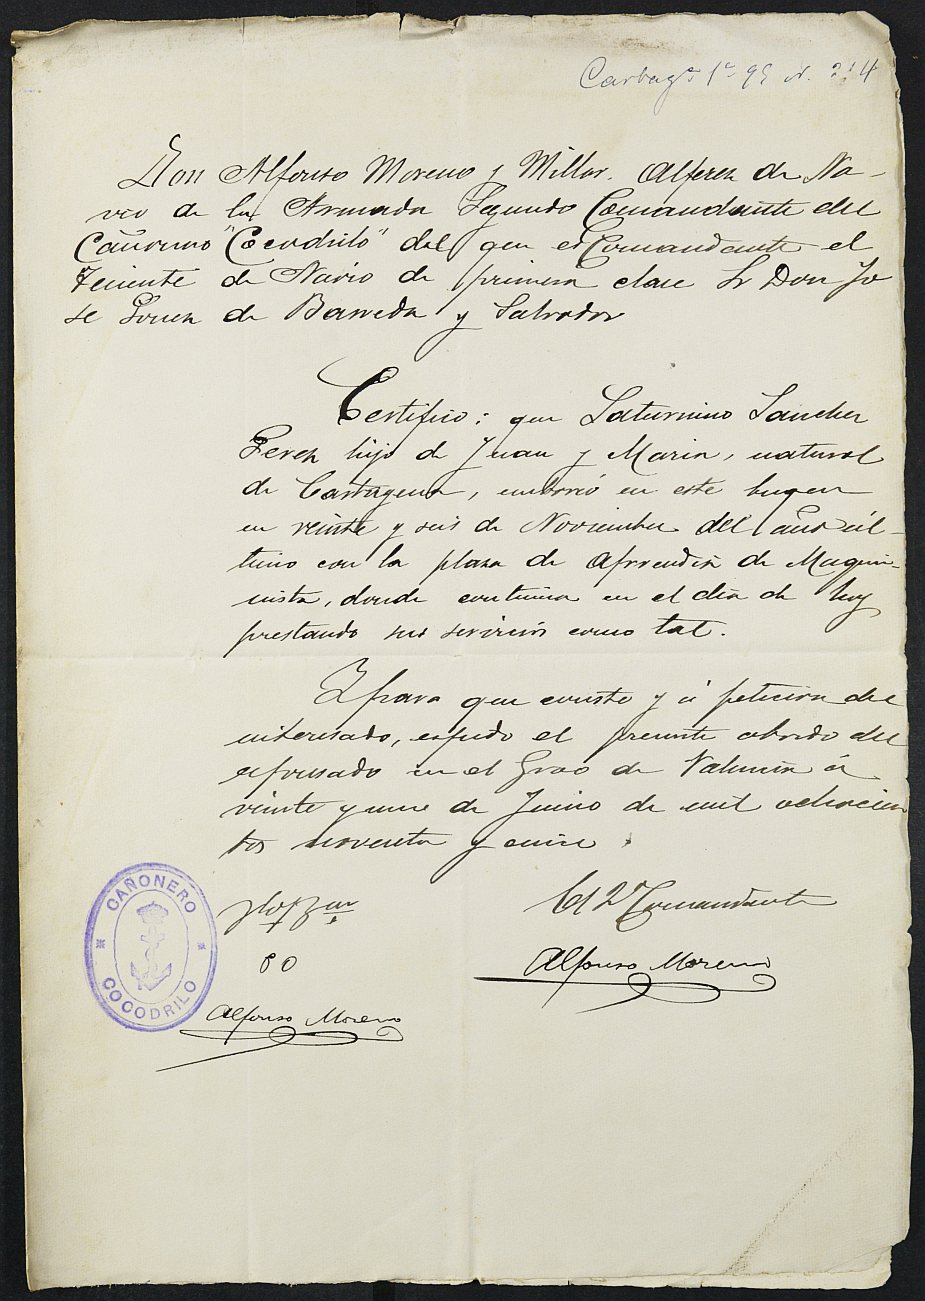 Certificado de servicio como voluntario del Ejército de Saturnino Sánchez Pérez para la excepción del servicio militar, mozo del reemplazo de 1895 de Cartagena.